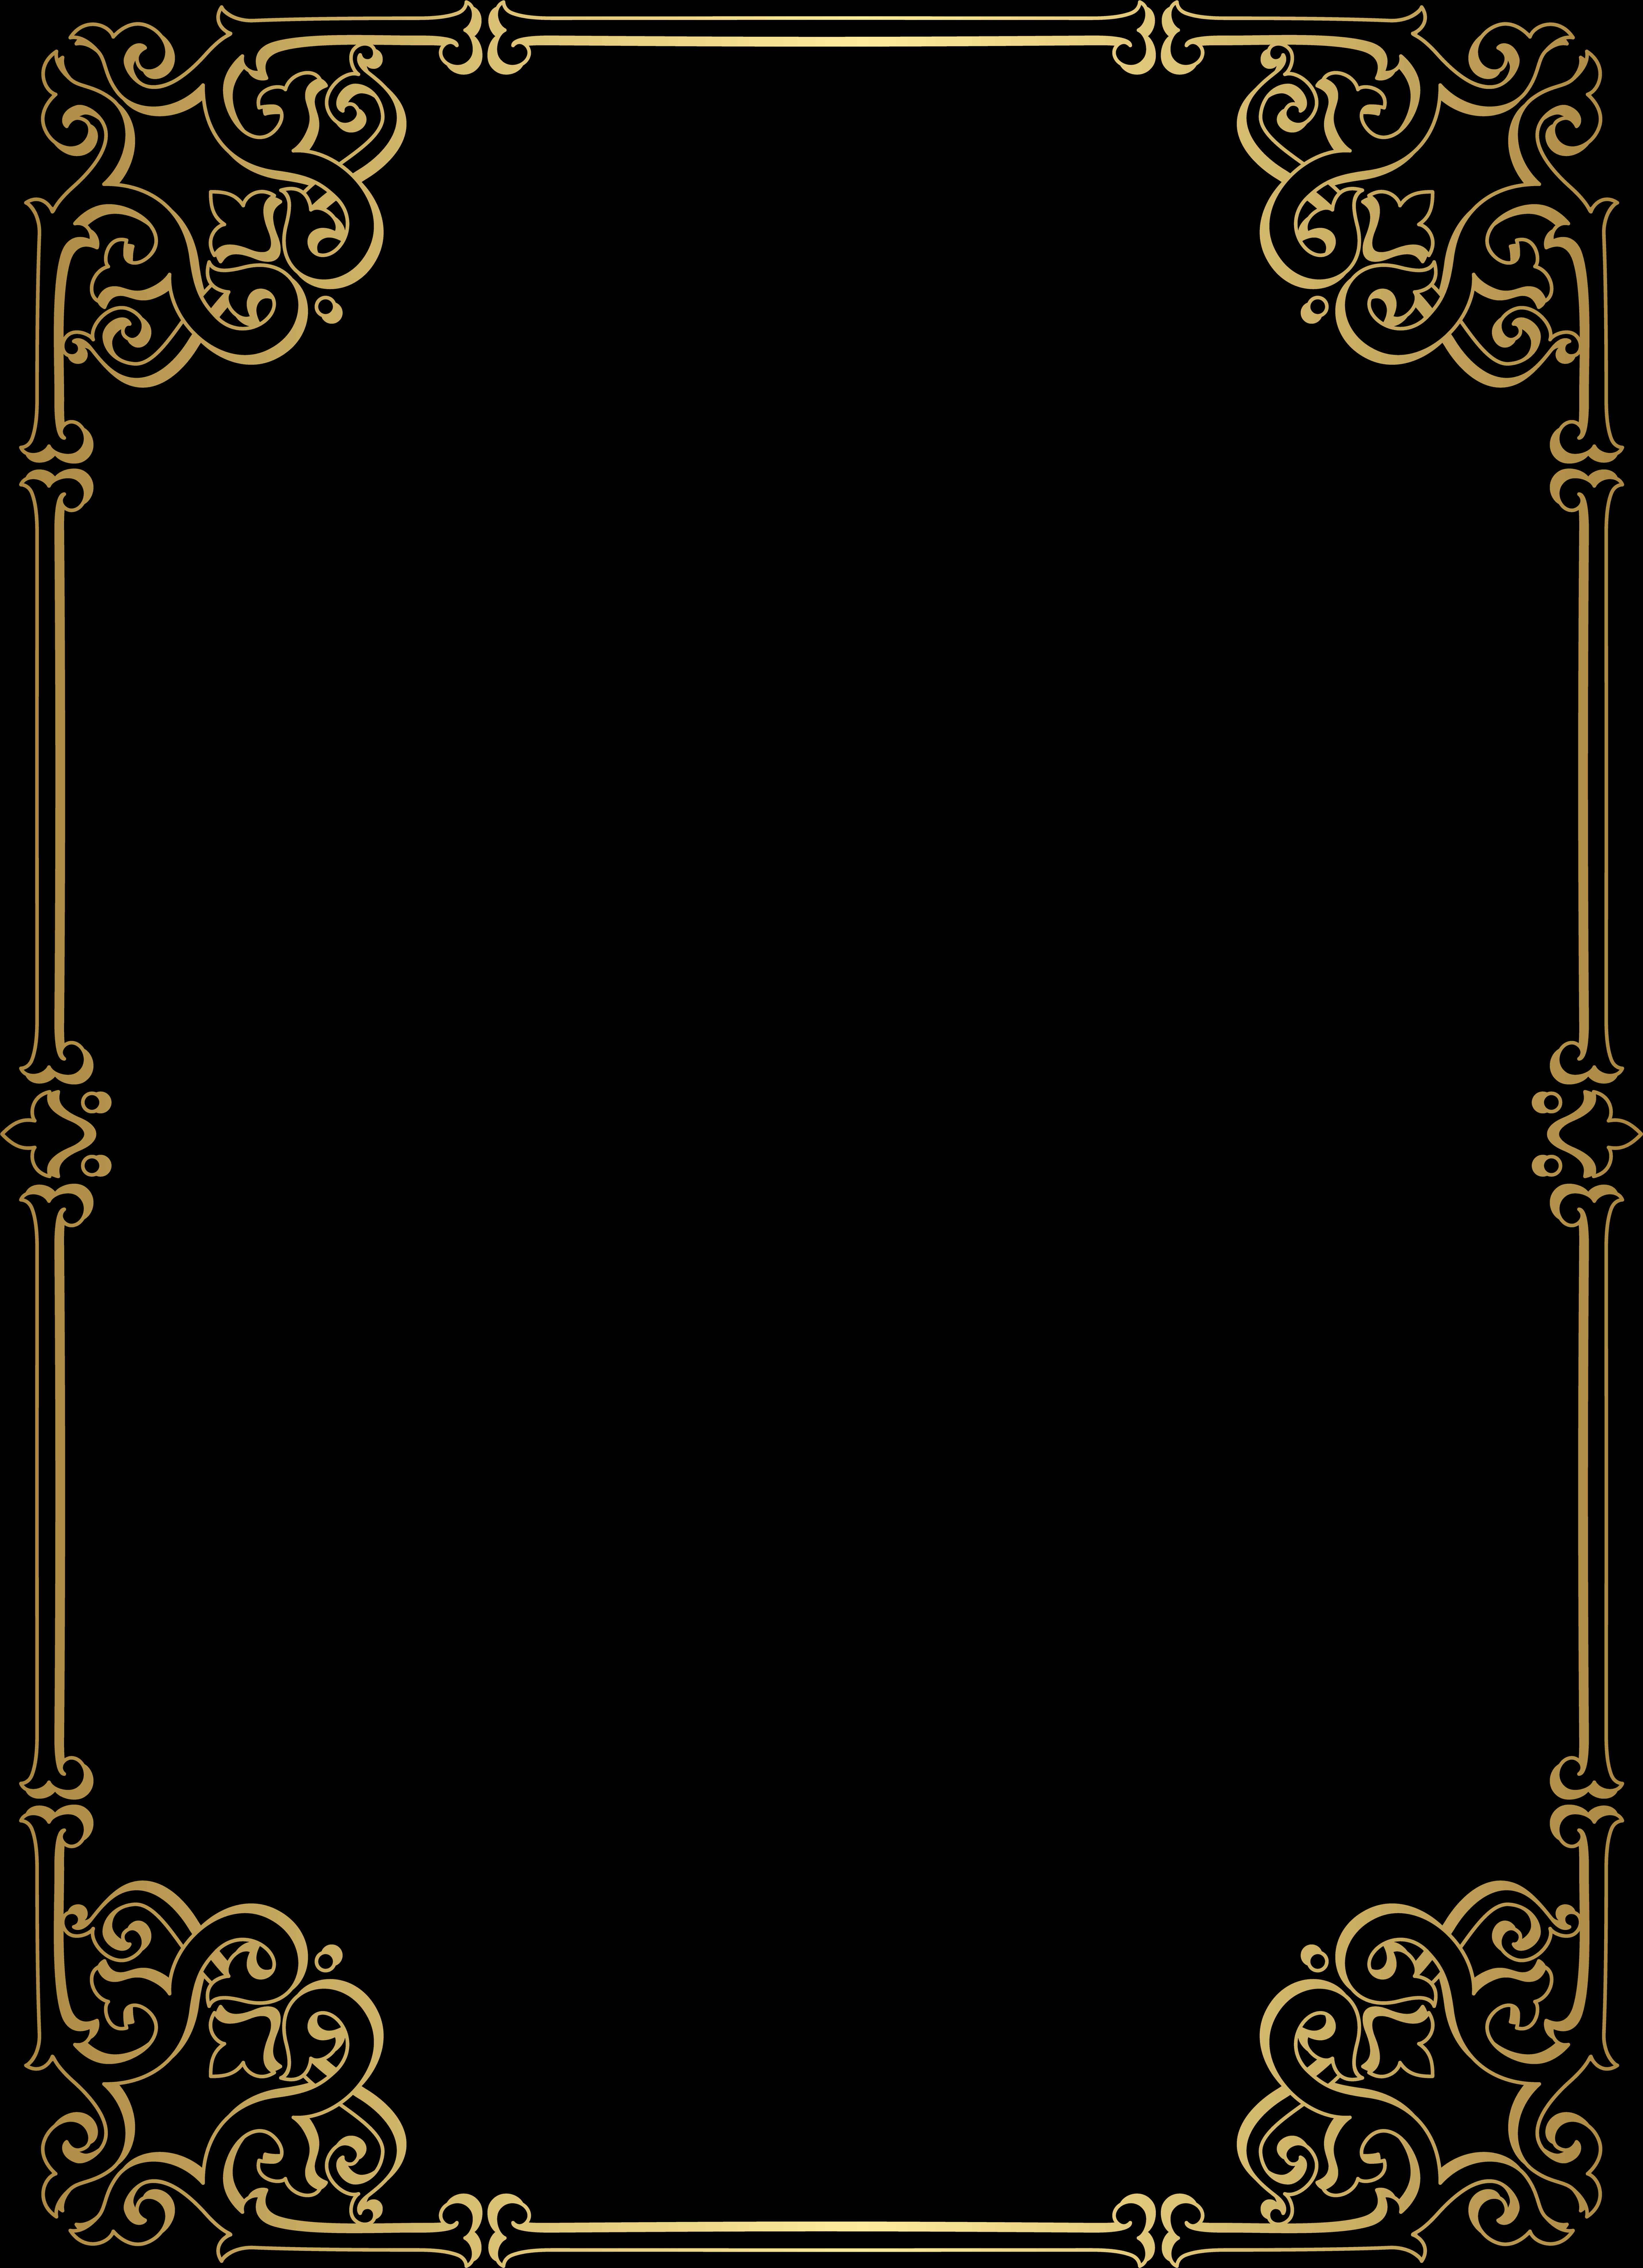 Elegant Black Gold Certificate Border PNG image